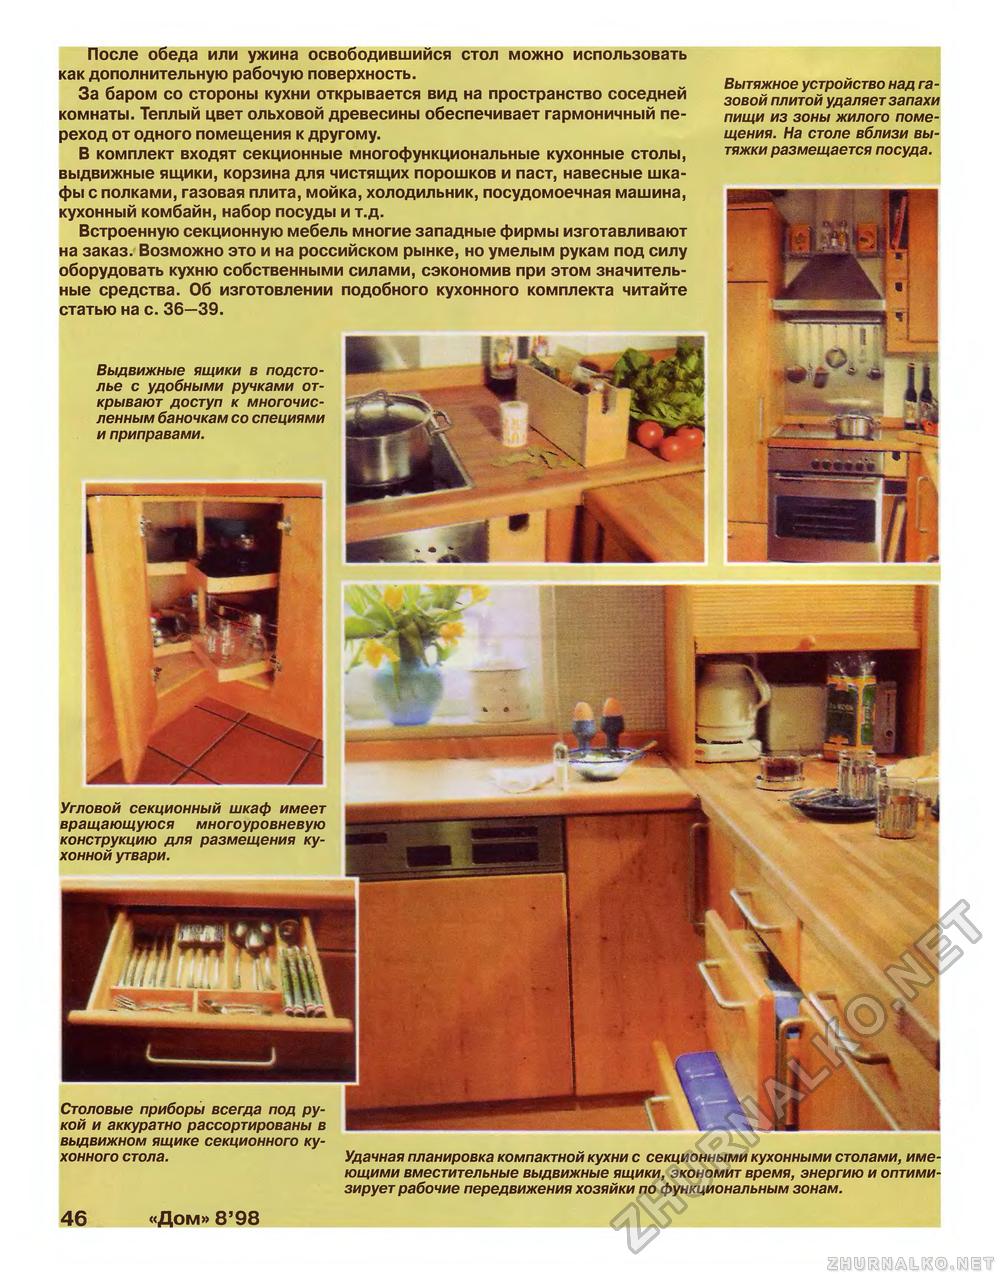 Дом 1998-08, страница 46